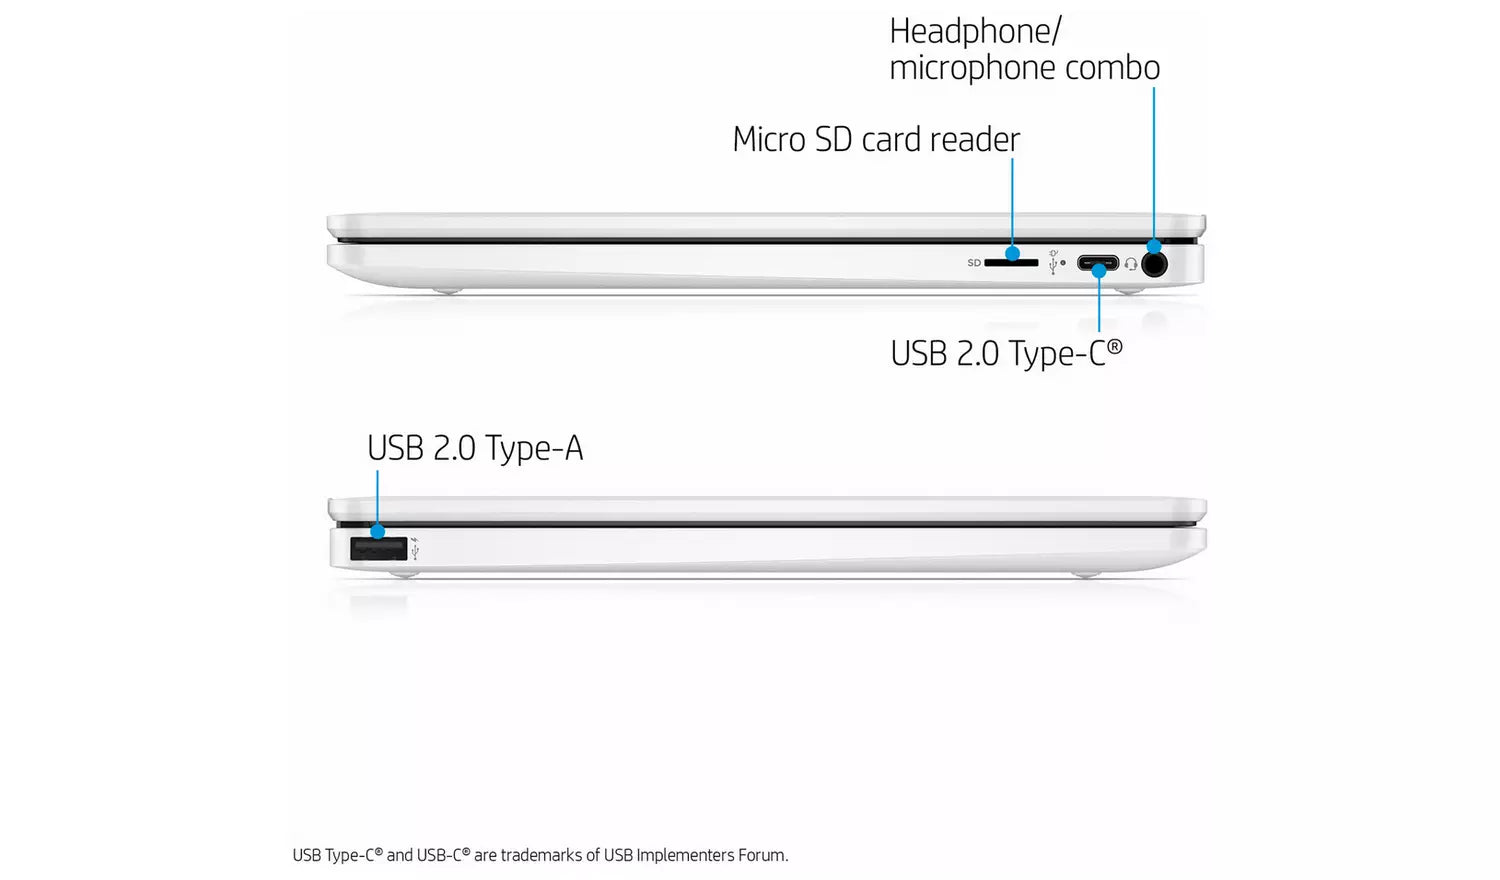 HP Chromebook 11A-NA0000NA 11.6" MediaTek MT8183 4GB RAM 32GB - White - Pristine